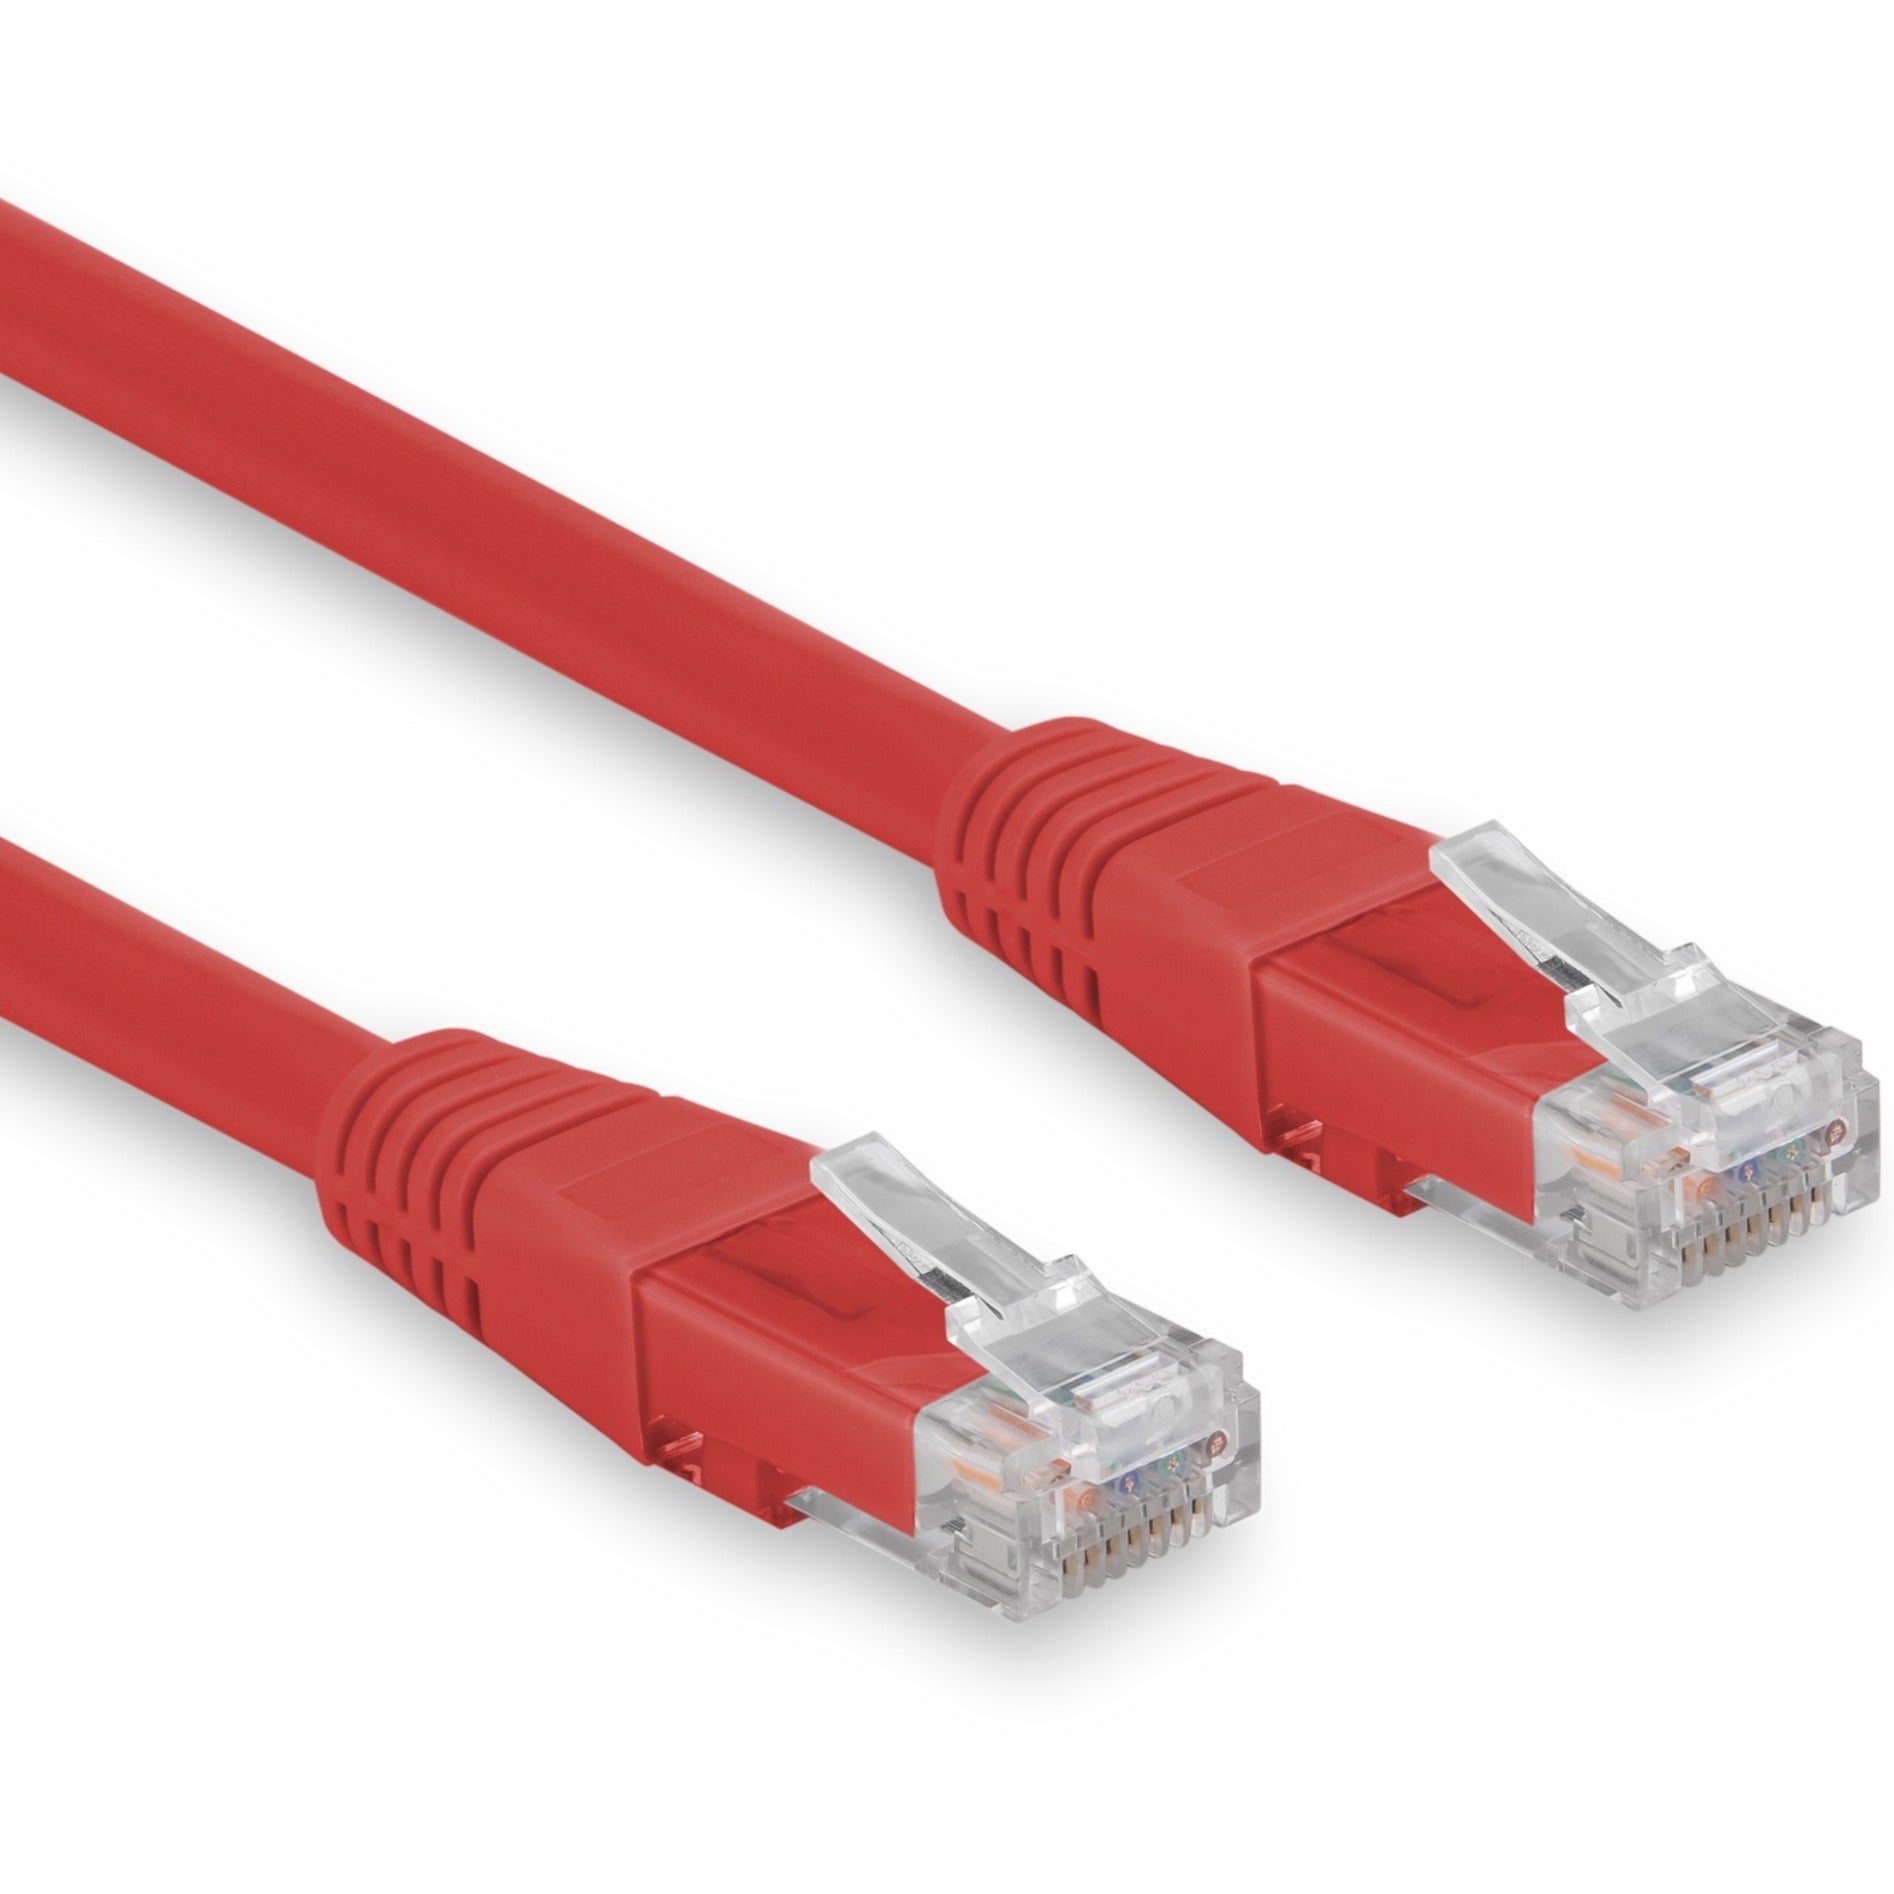 Rocstor Y10C337-RD Cat.6 Network Cable, 3 ft, 10 Gbit/s, Lifetime Warranty